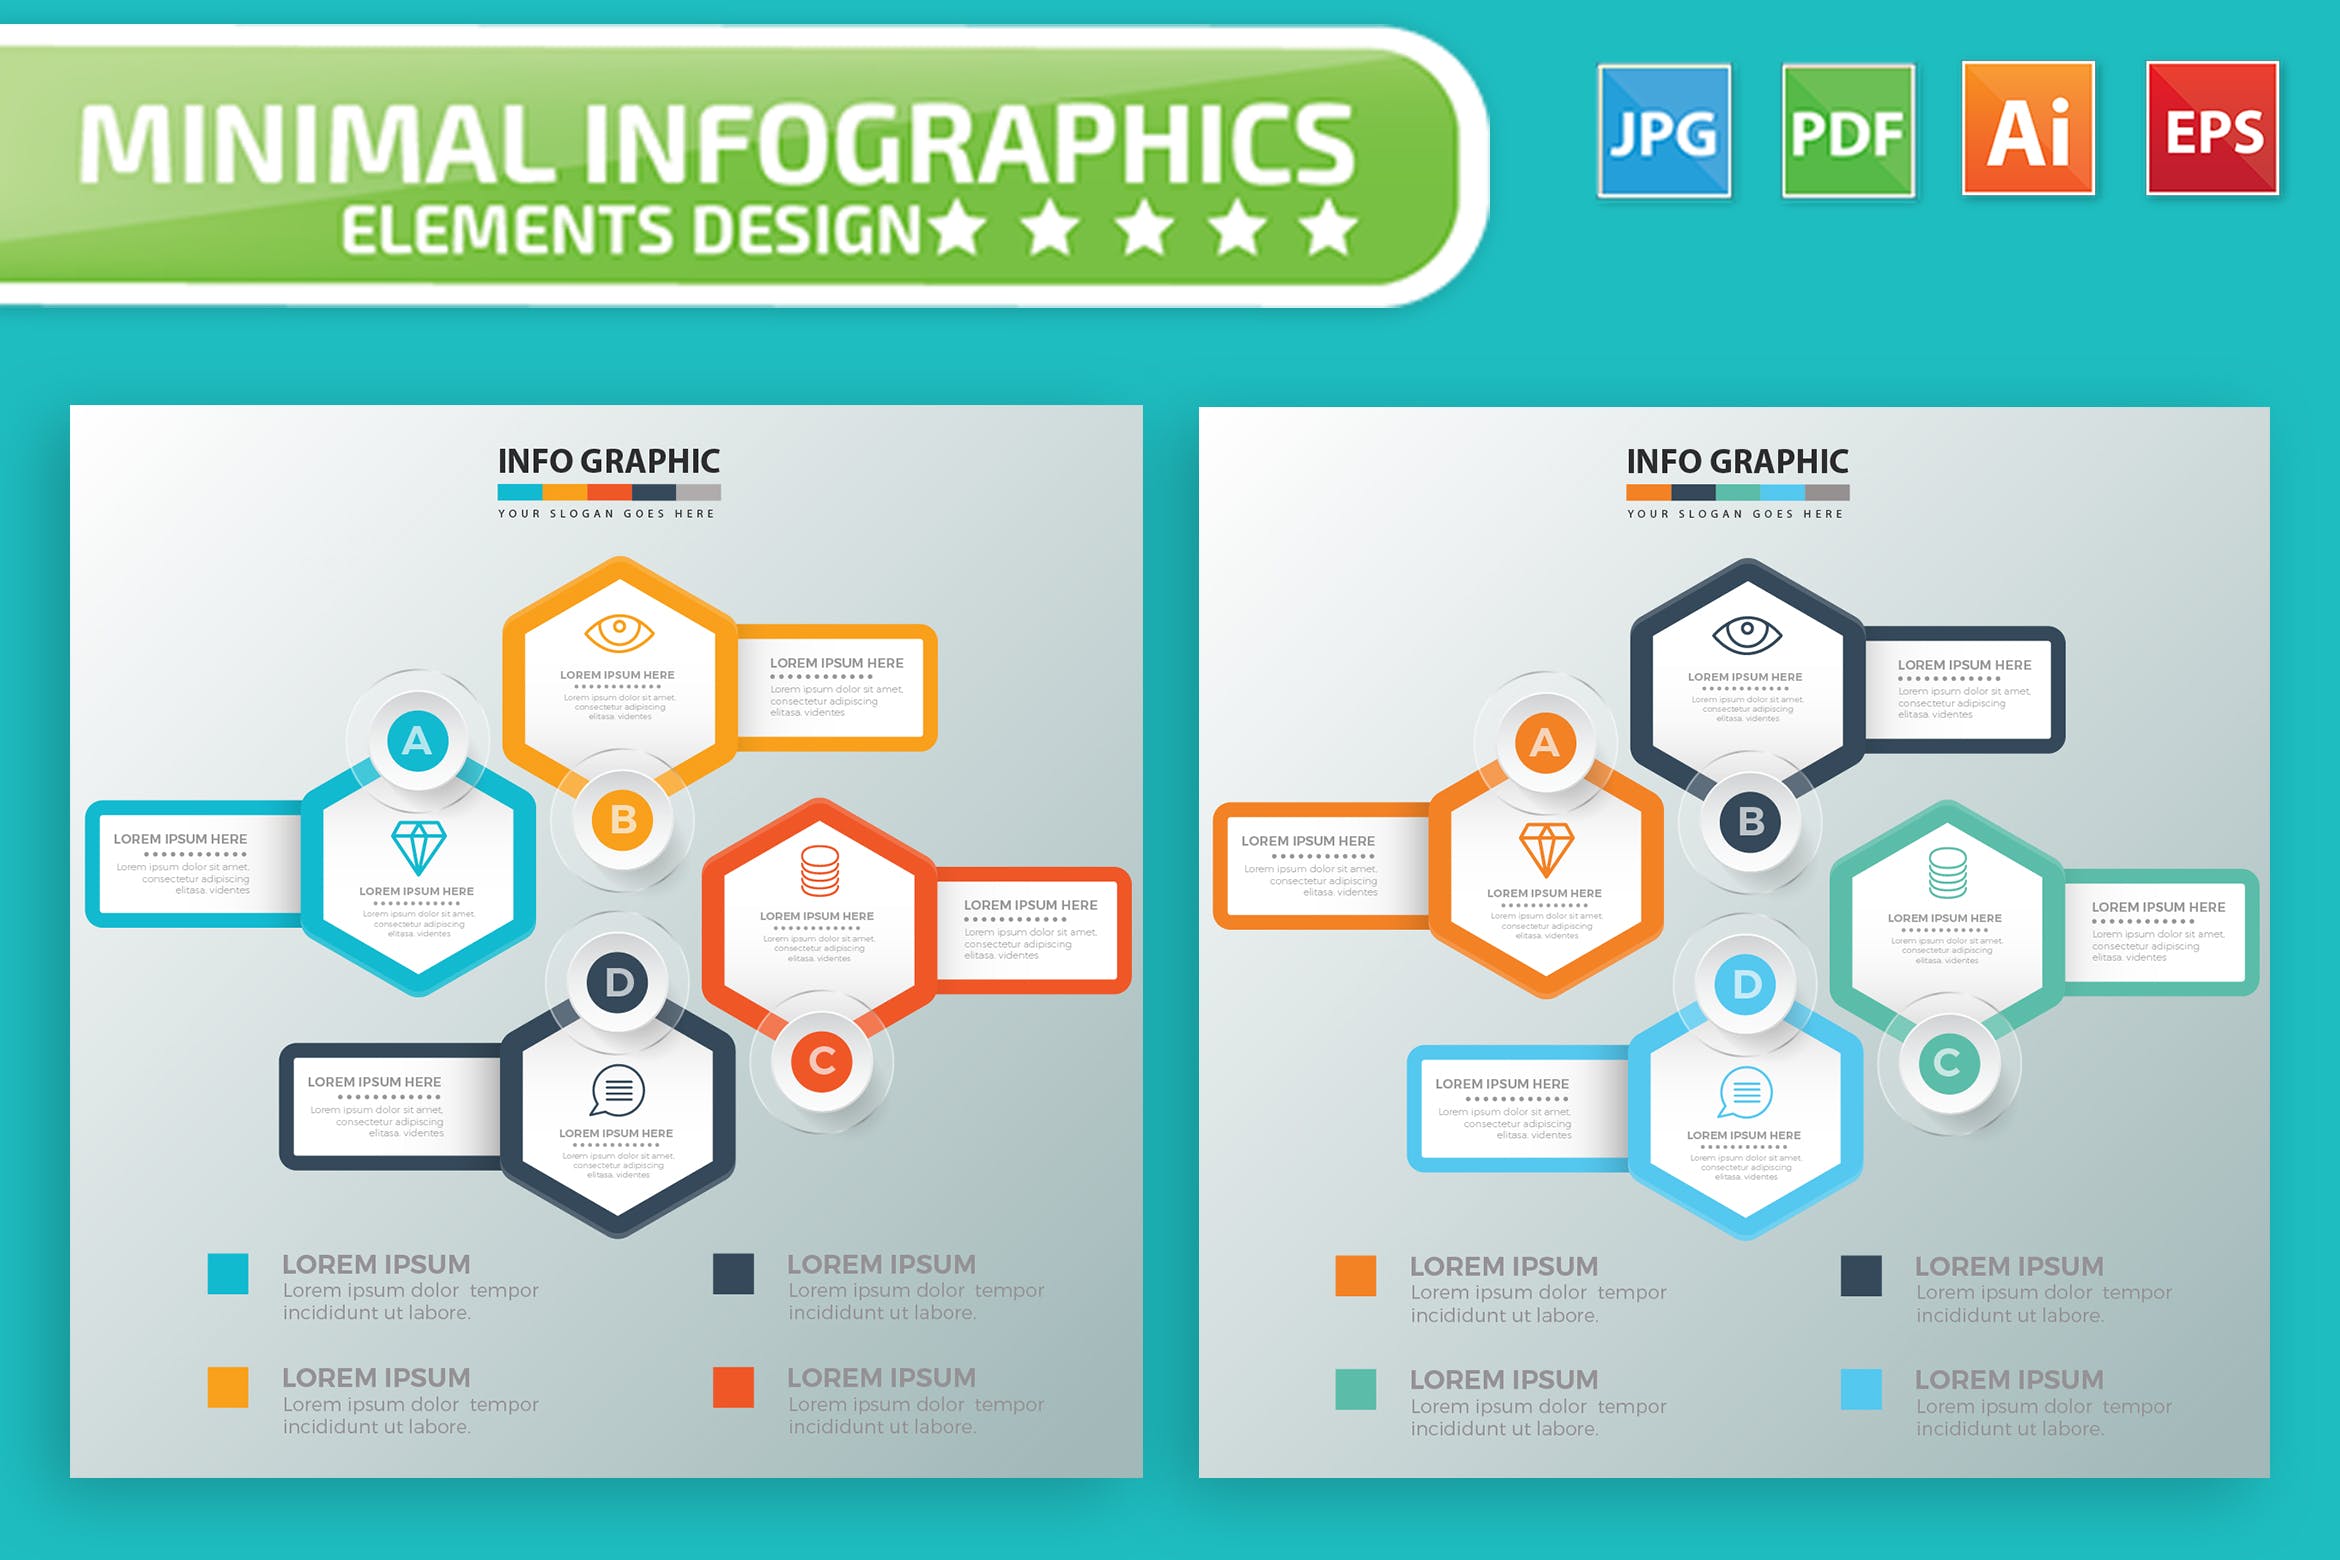 要点说明/重要特征信息图表矢量图形亿图网易图库精选素材v7 Infographic Elements Design插图